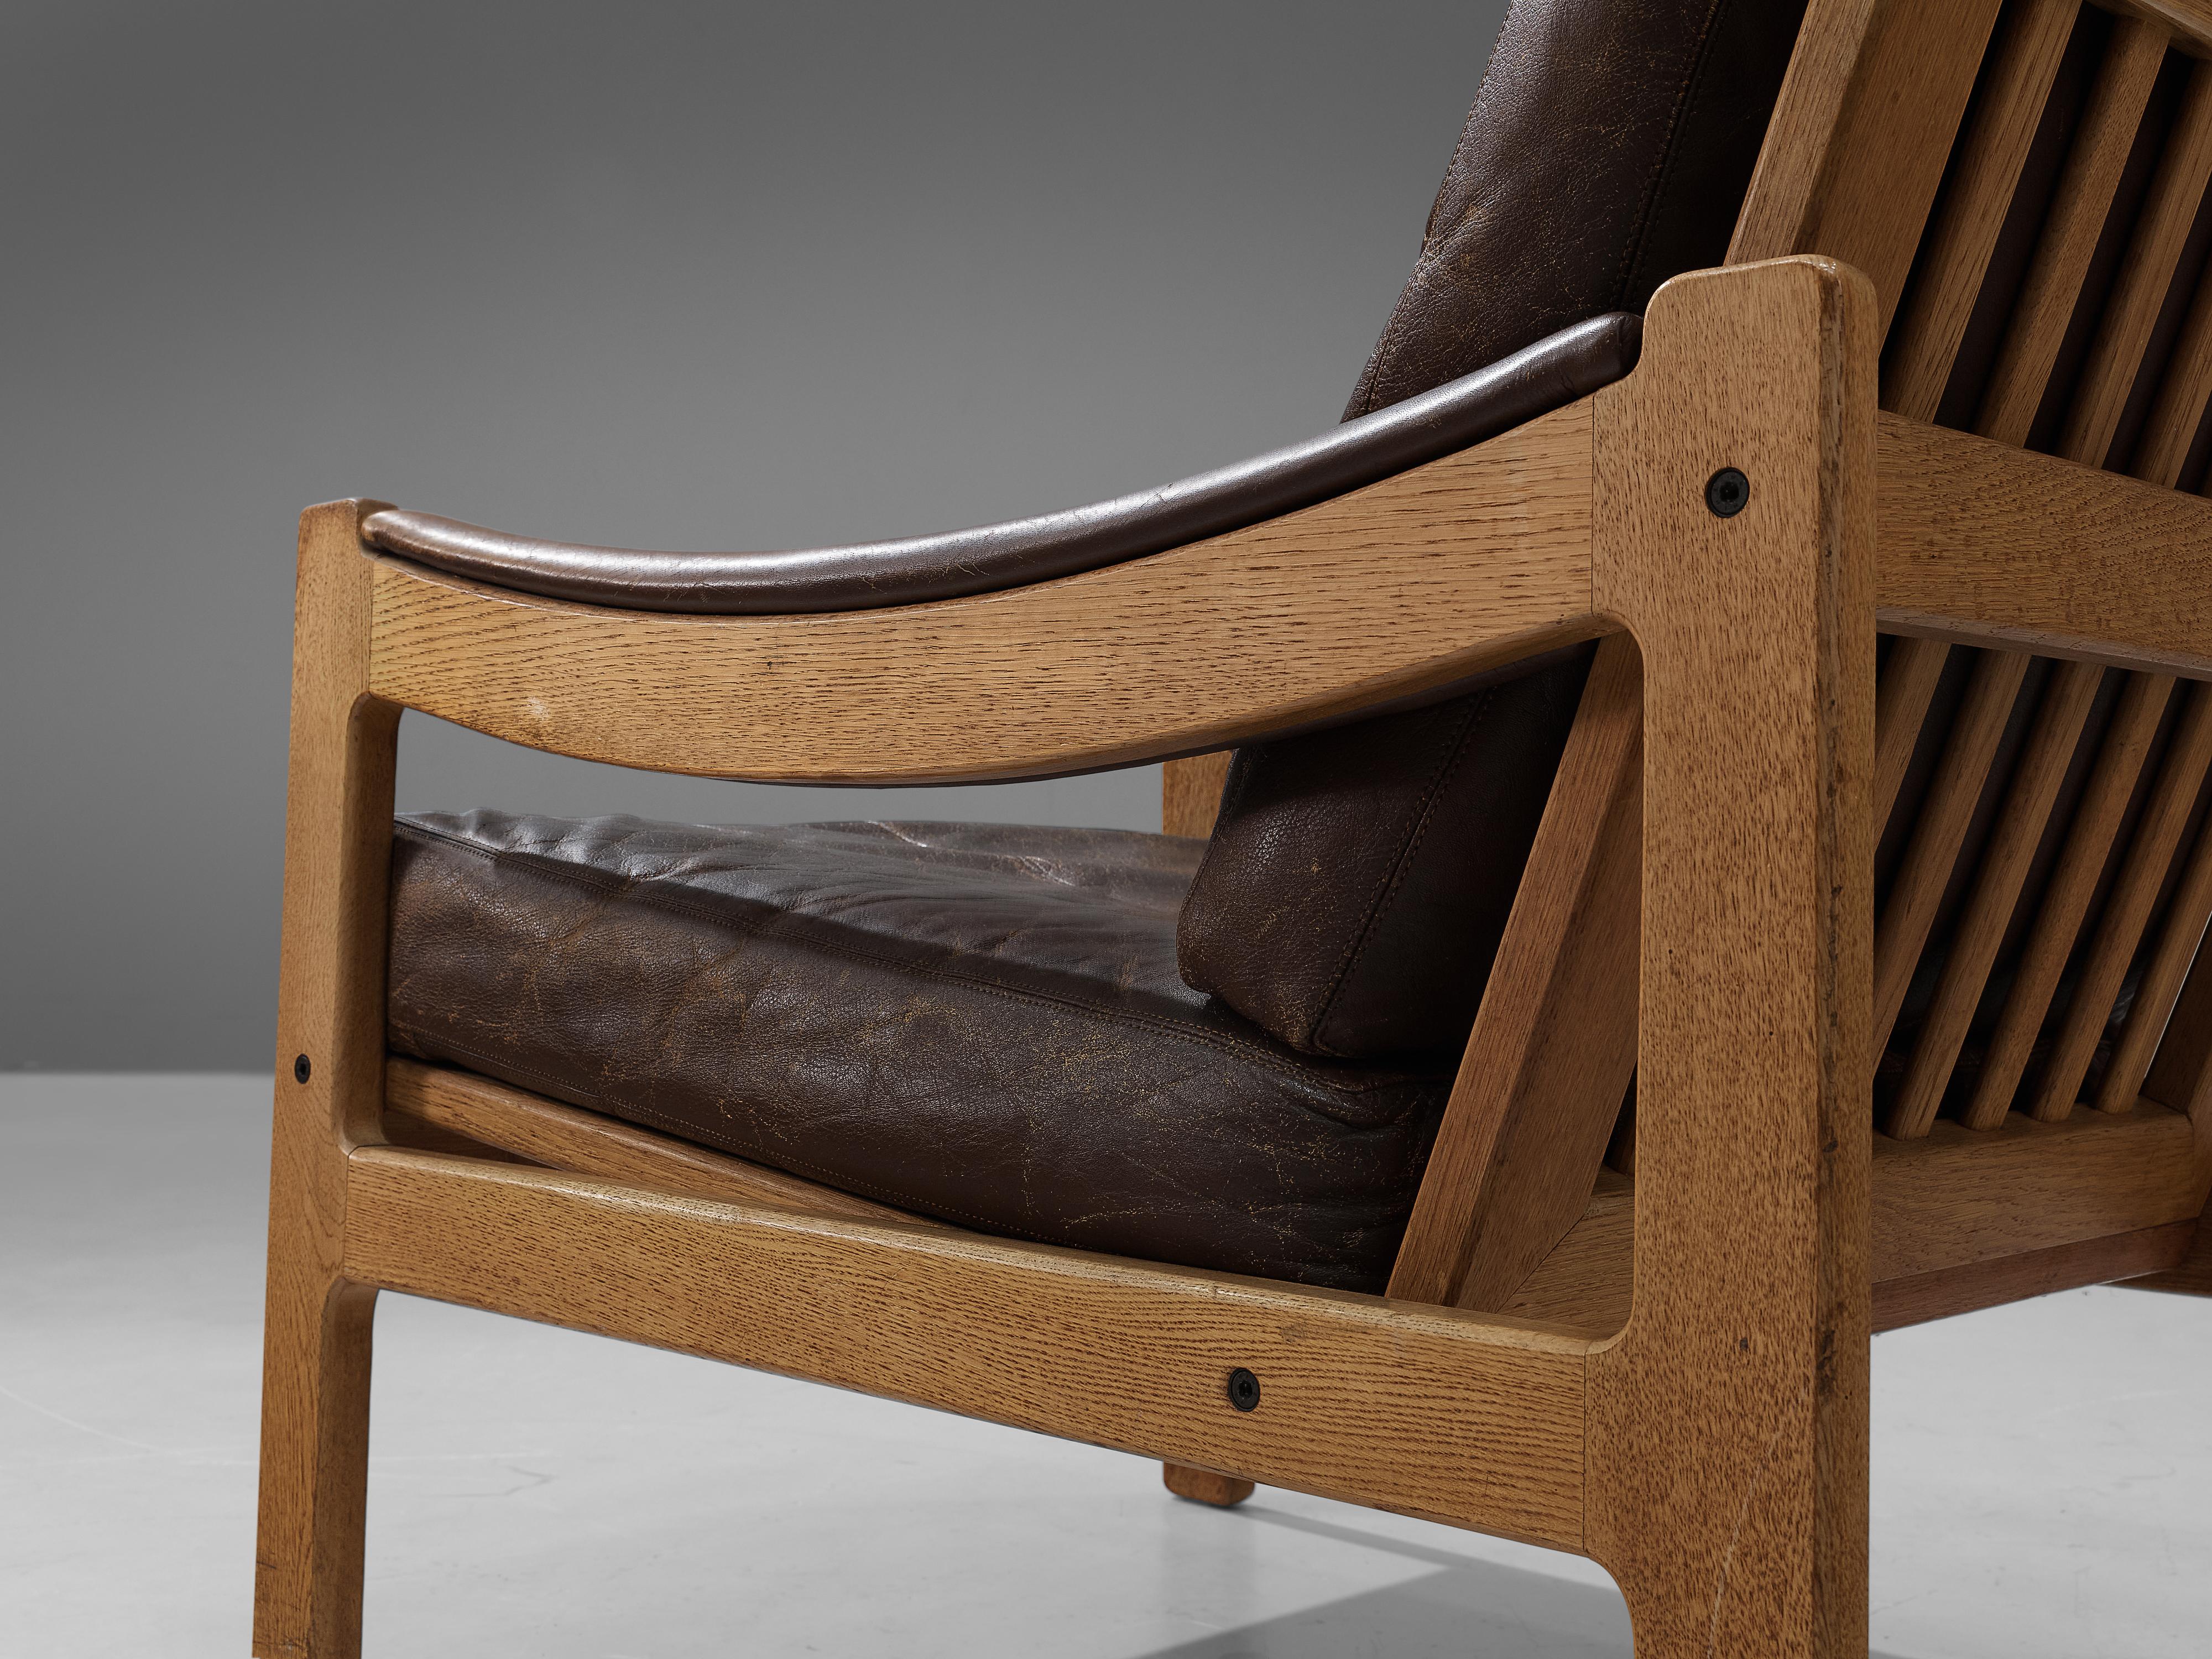 Paar Loungesessel, braunes Leder, Eiche, Dänemark, 1970er Jahre

Diese Sessel sind ein Paradebeispiel für die Ideologie des skandinavischen Mid-Century-Designs. Klar im Erscheinungsbild, in der Verwendung neutraler Materialien und in der